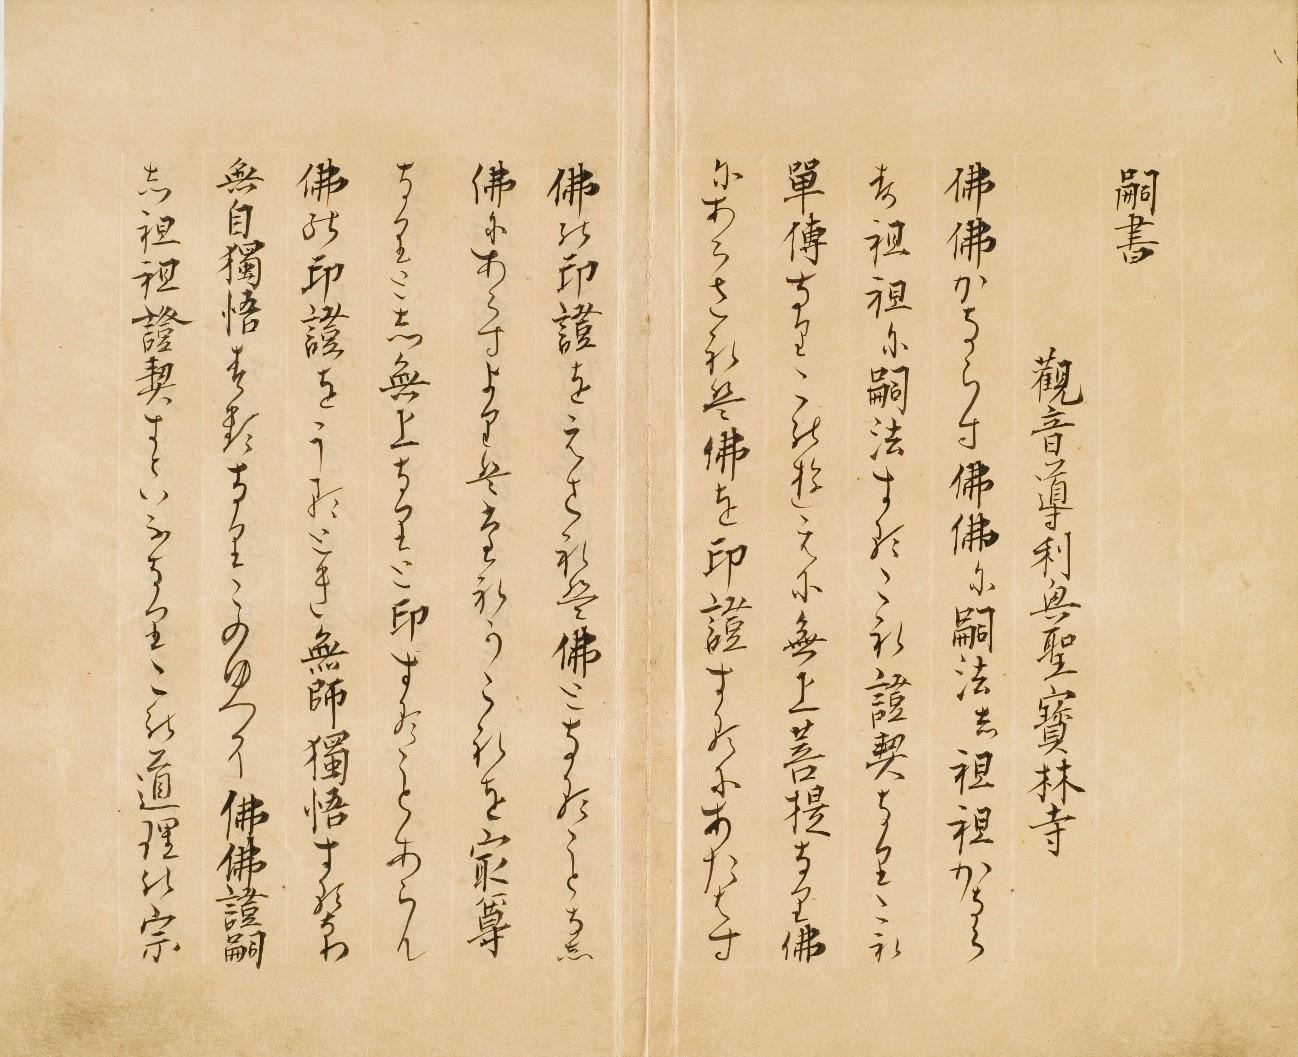 駒澤大学禅文化歴史博物館が道元禅師直筆『正法眼蔵嗣書』草案本のレプリカ作製のためクラウドファンディングを実施 -- 分断された26葉のうち所在がわかる13葉が対象